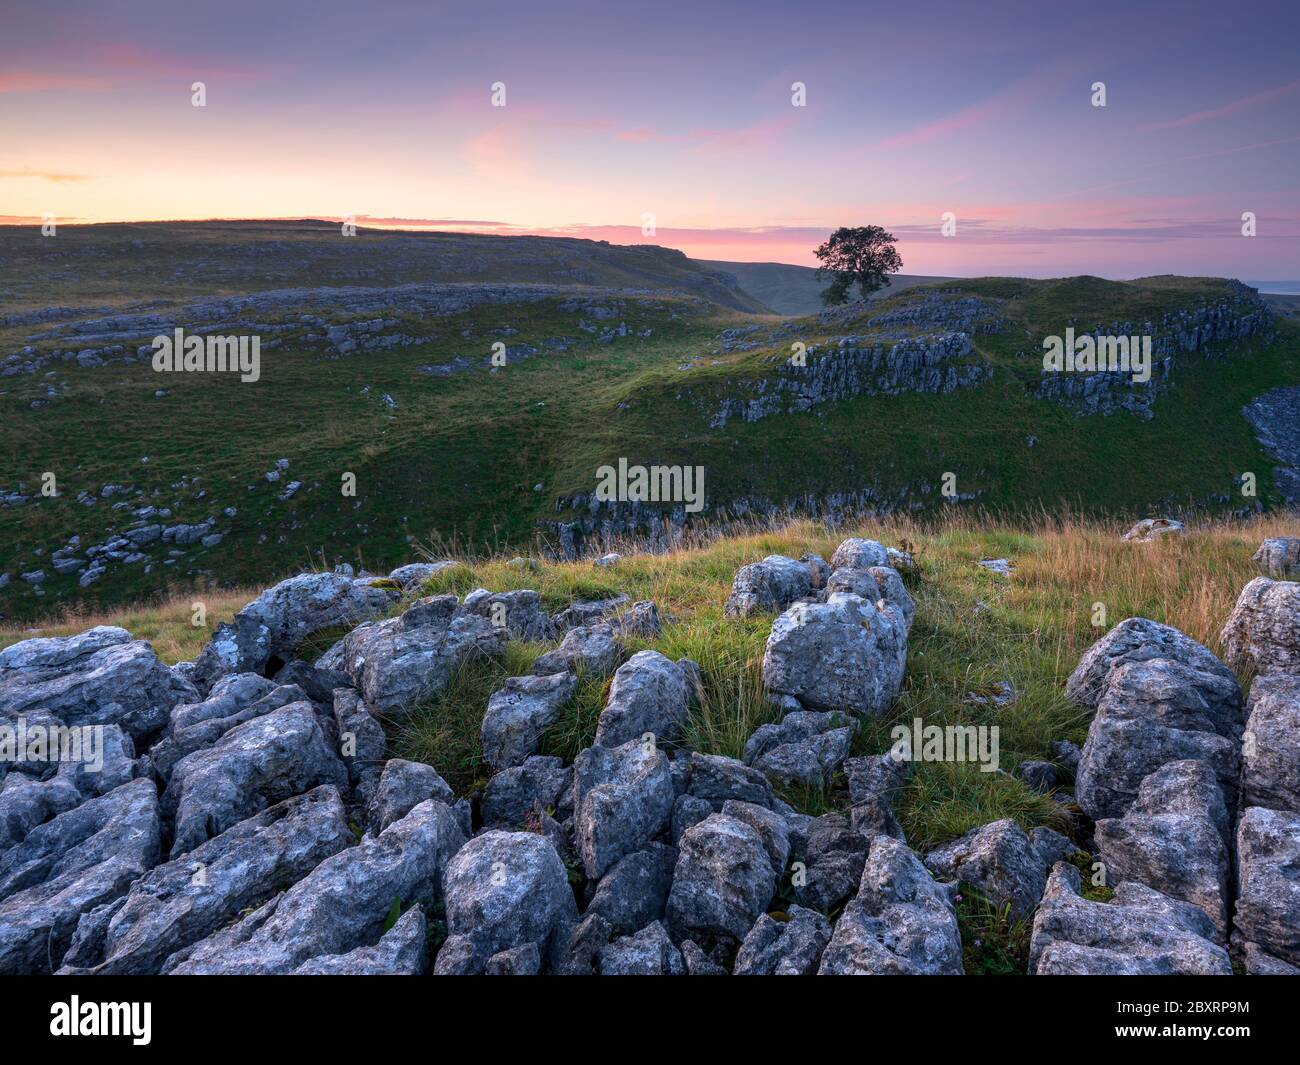 Un árbol solitario corta el horizonte en los valles de piedra caliza en Malham Lings en el Parque Nacional de Yorkshire Dales. La escena está iluminada por un amanecer tenue. Foto de stock